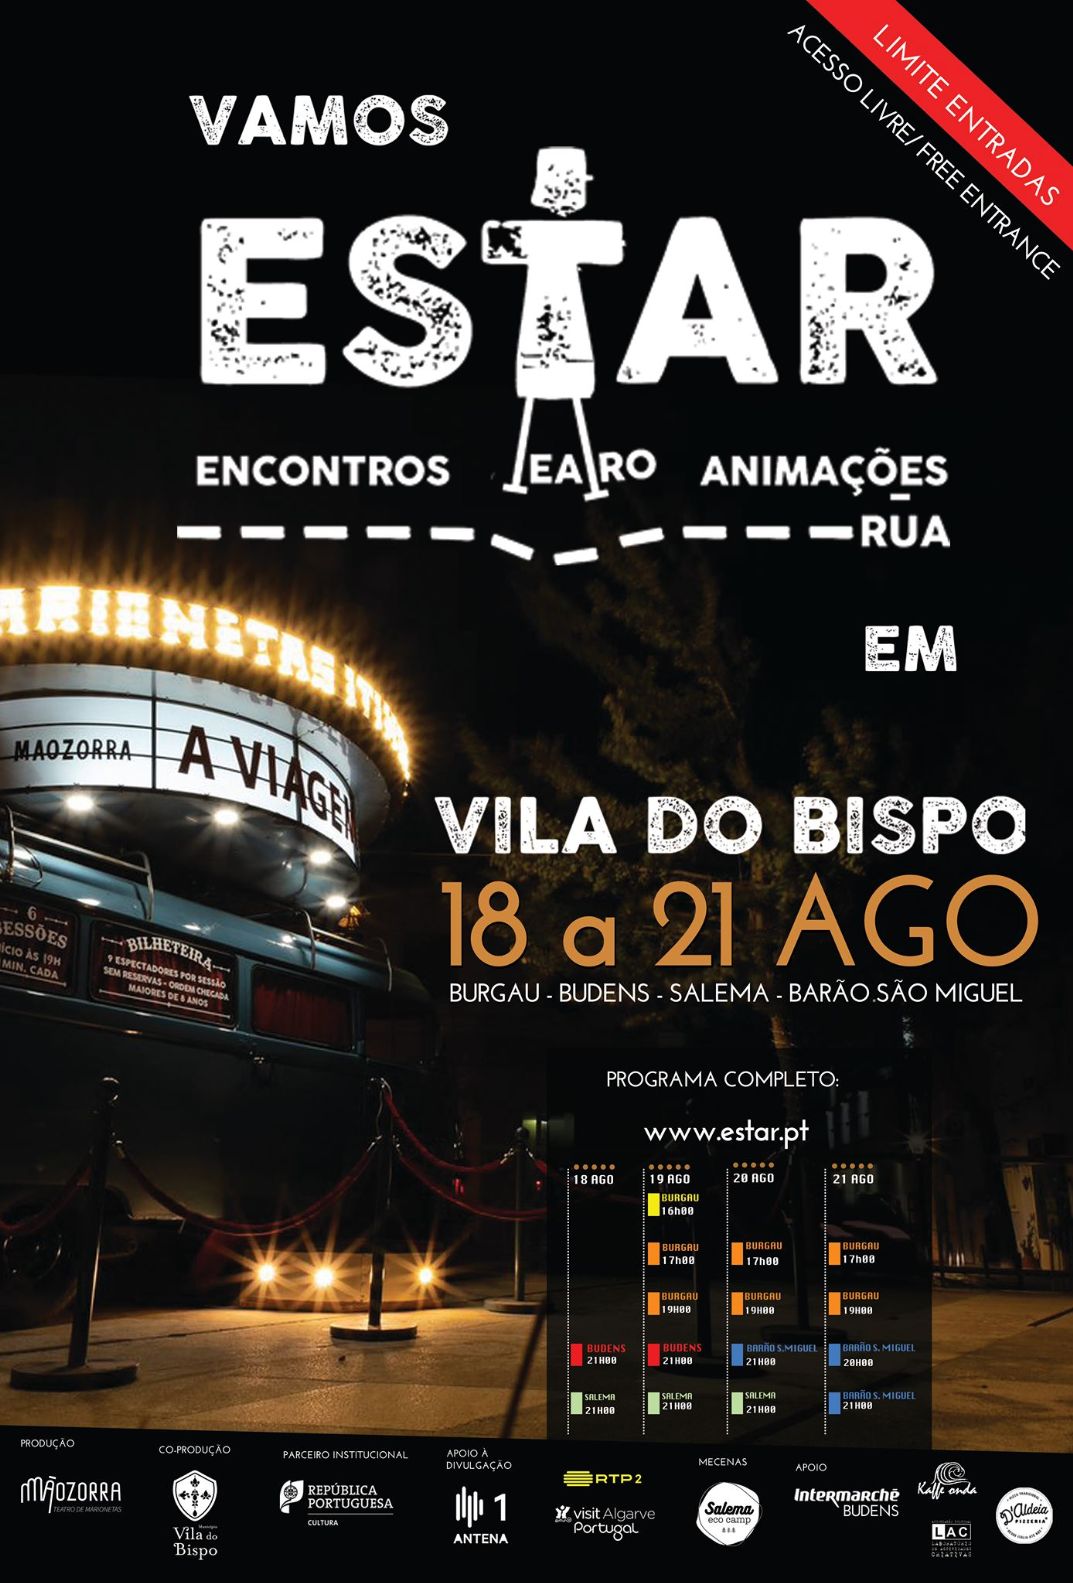 Vila do Bispo: Já é conhecida a programação do Festival ESTAR  – Encontros de Teatro e Animação de Rua